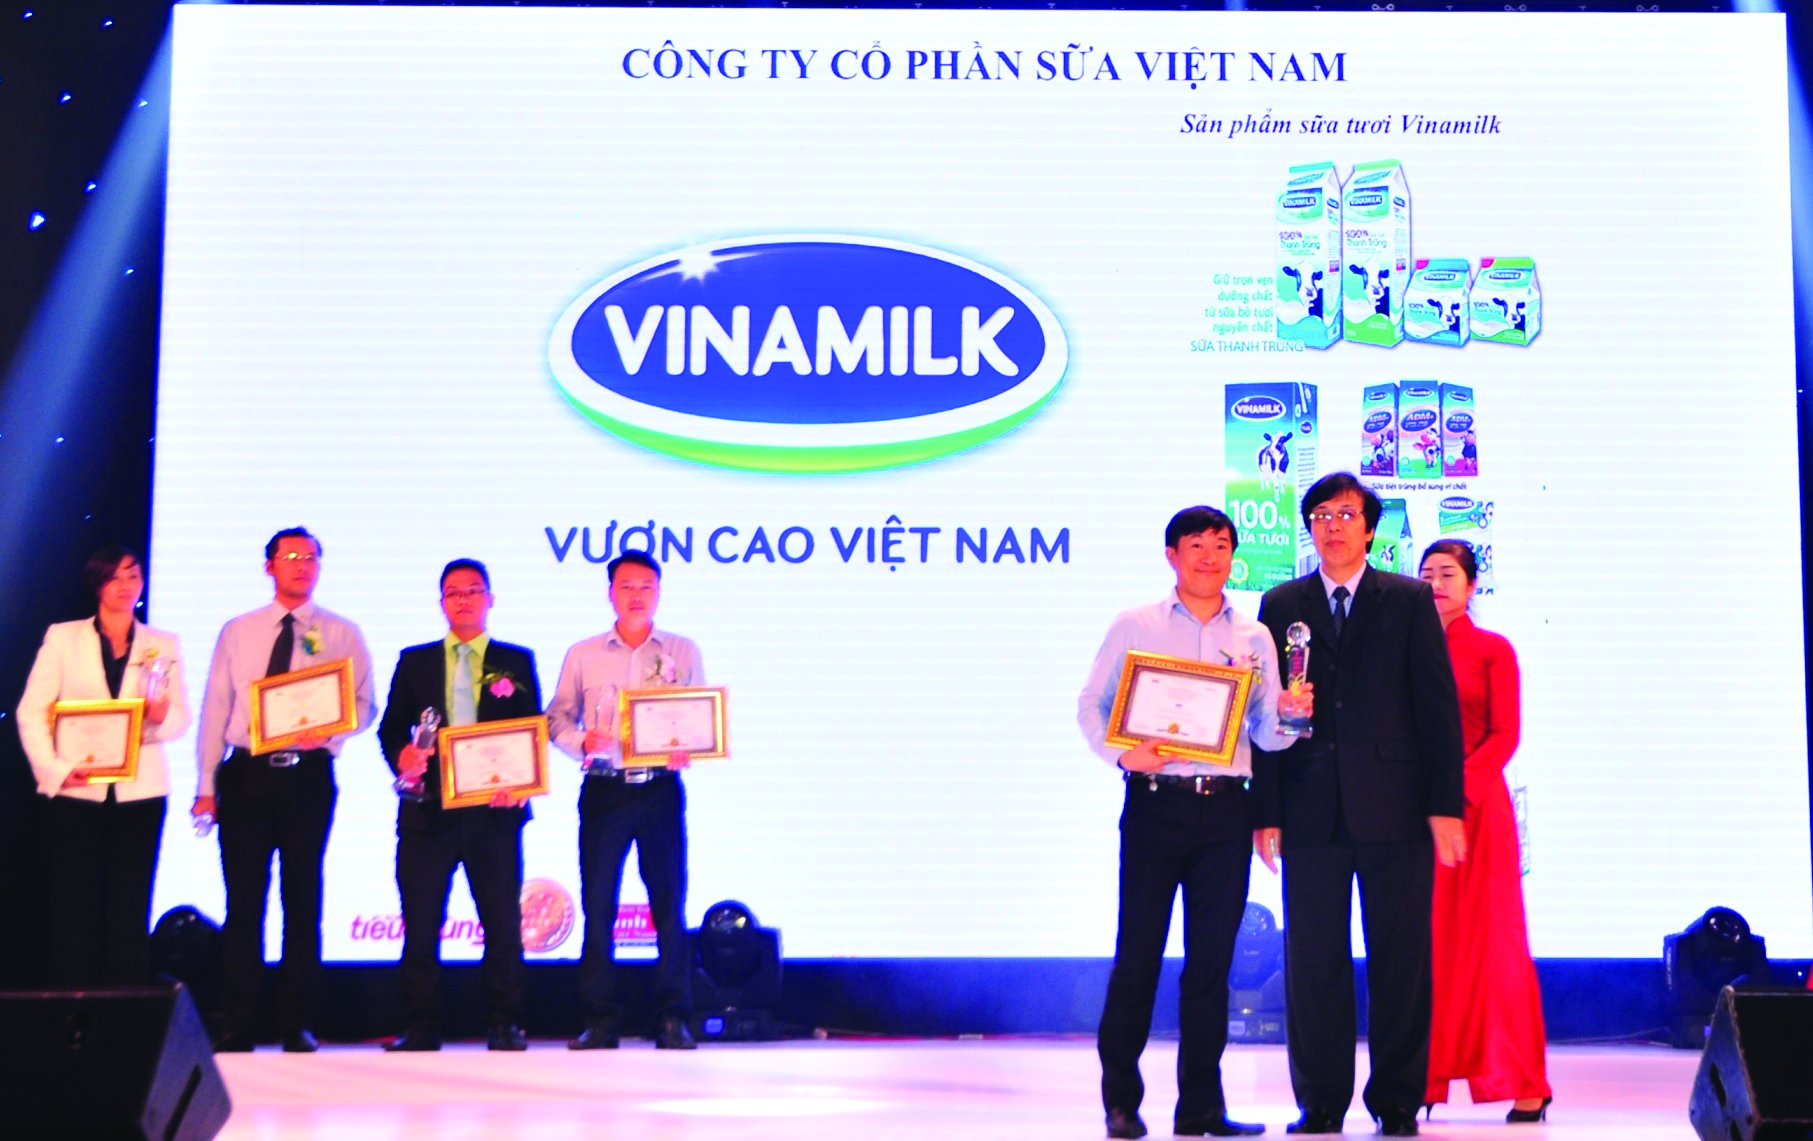 Ông Đỗ Thanh Tuấn, Trưởng bộ phận đối ngoại Vinamilk đại diện công ty nhận giải thưởng tại lễ công bố thương hiệu “Tin và dùng” - Ảnh: Hà Phan